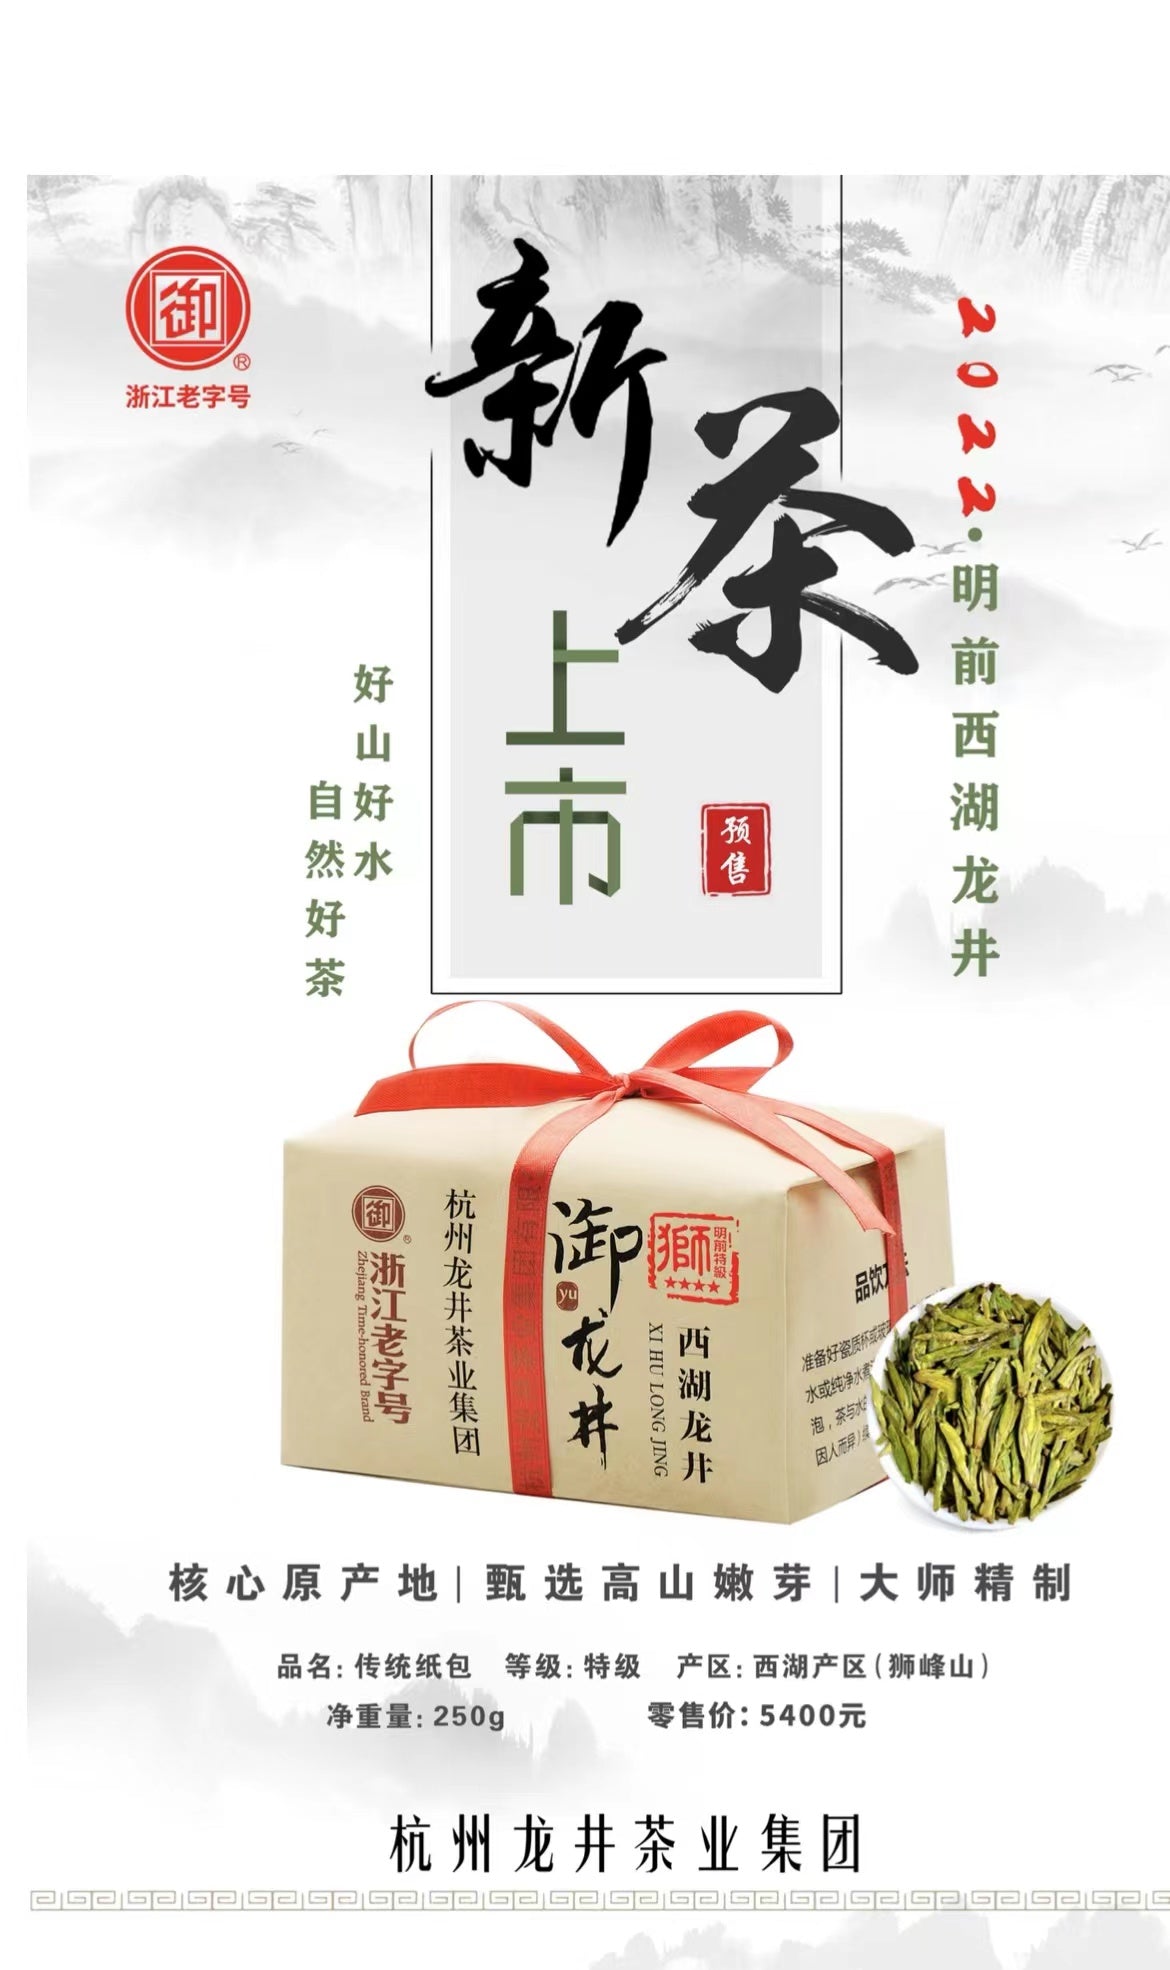 西湖龙井新茶 御牌特级4星（牛皮纸包装）狮峰山产区 250g/包